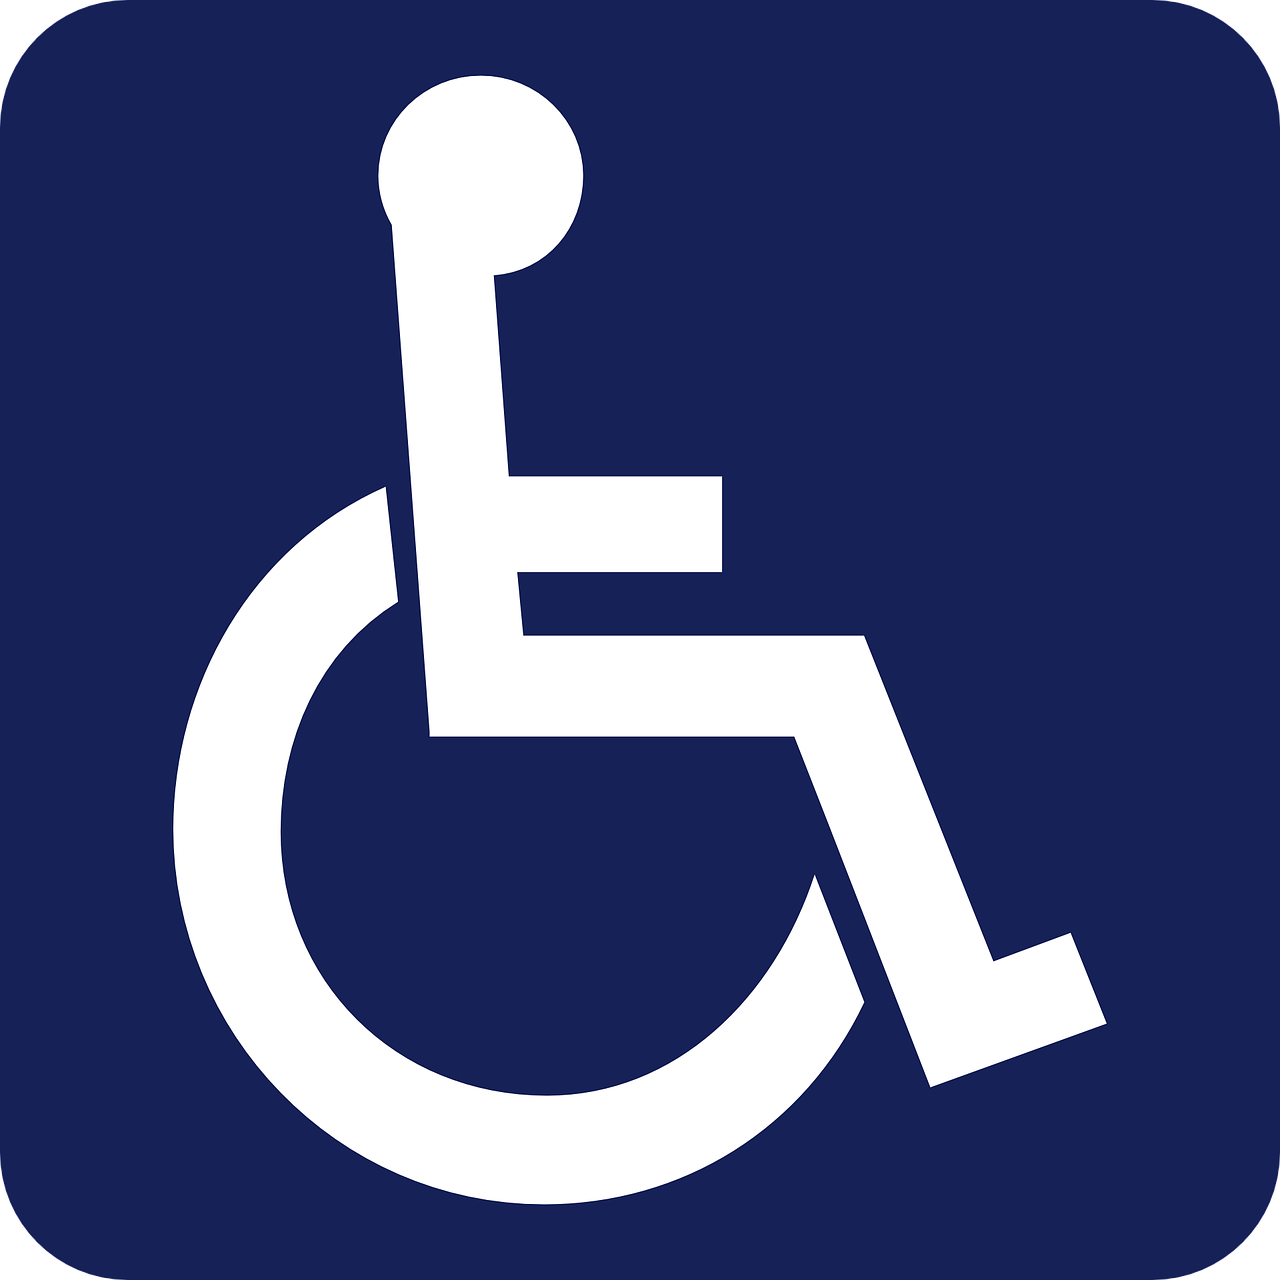 Woonbegeleidingscentrum De vier torens SGL Ervaren instelling gehandicaptenzorg verstandelijk gehandicapten